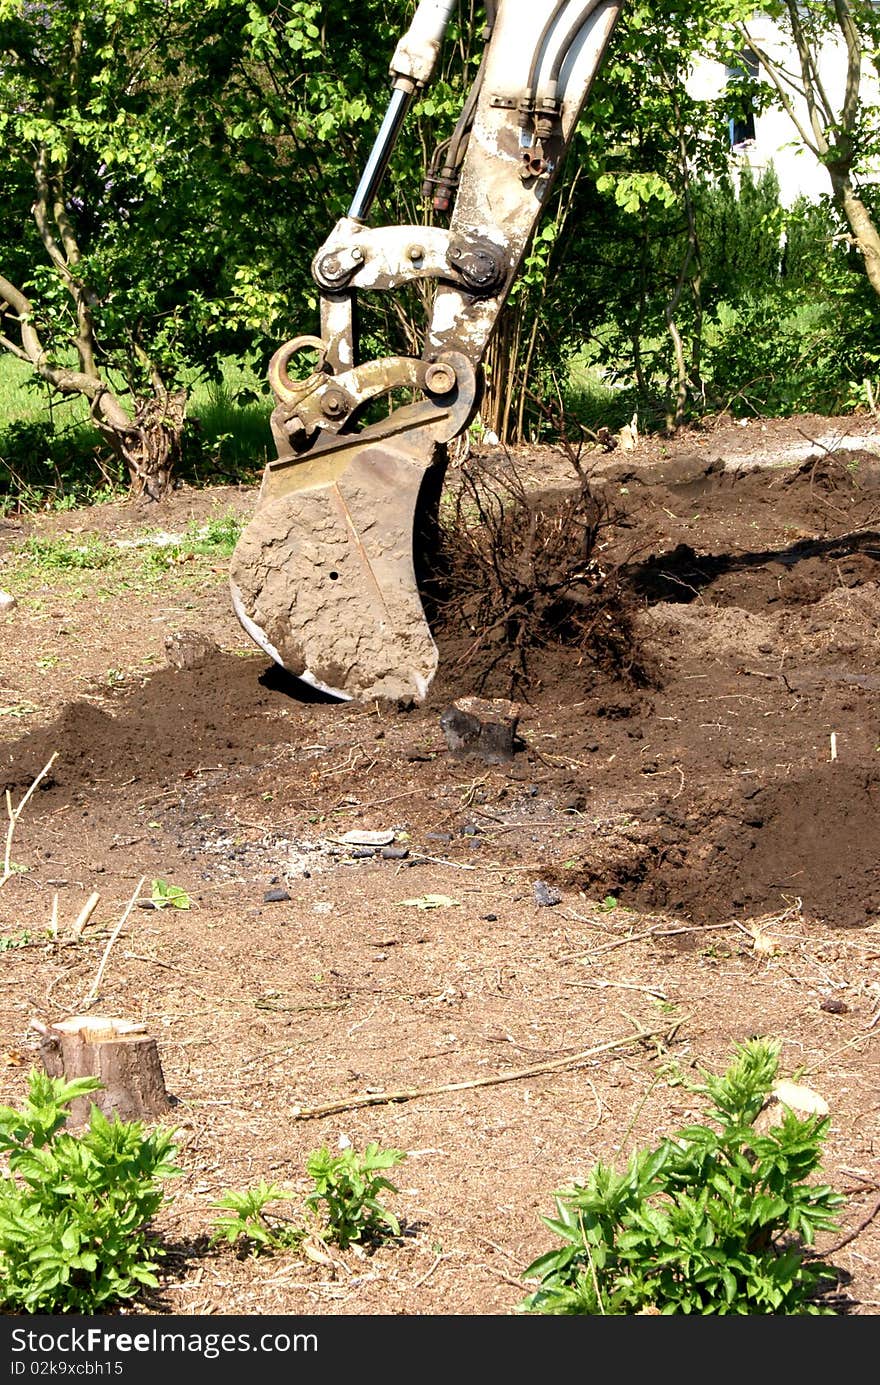 An excavator working in a garden. An excavator working in a garden